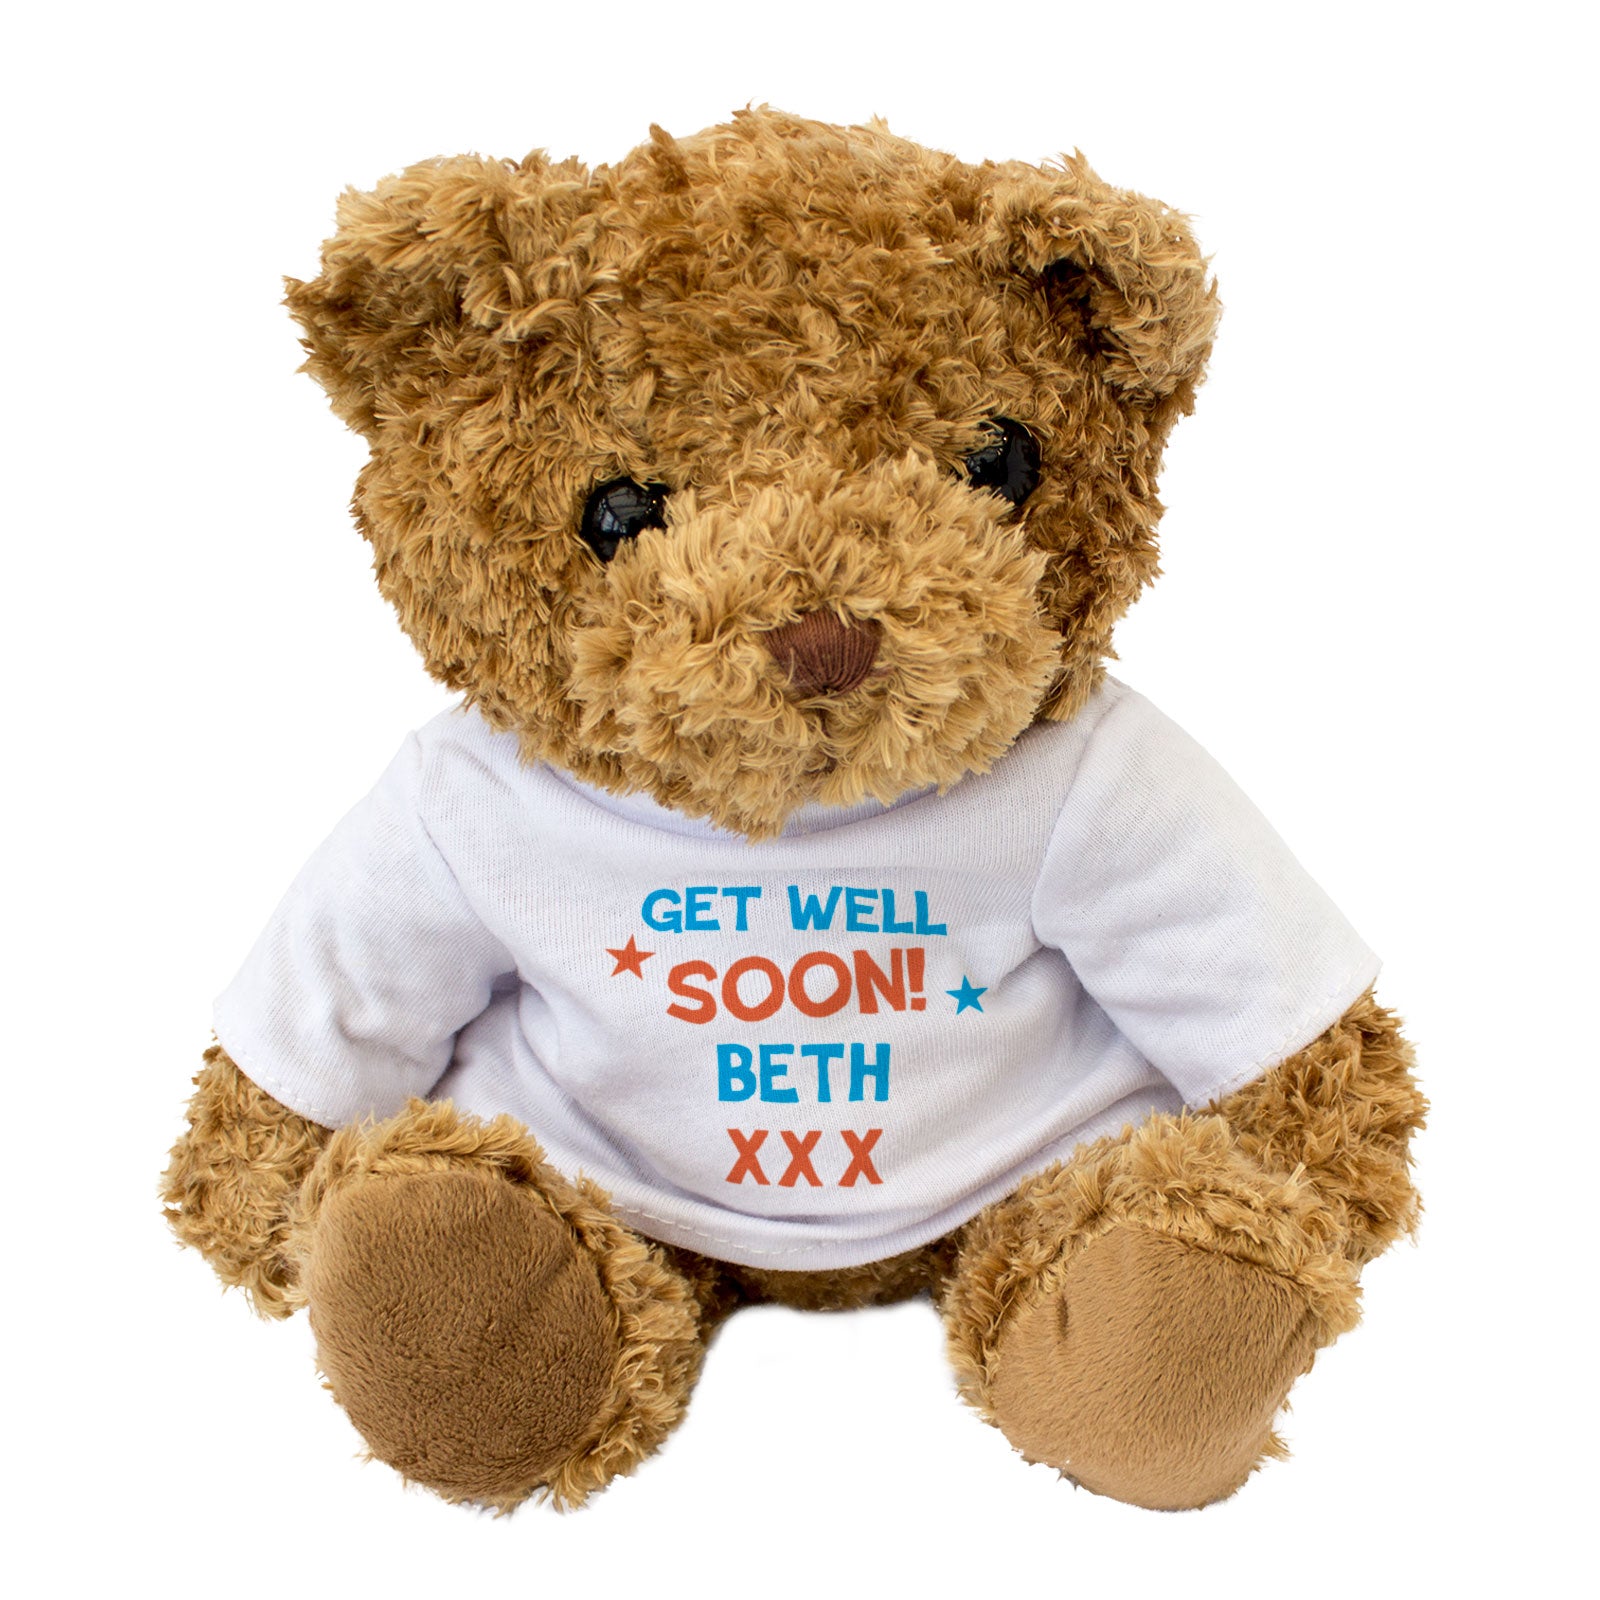 Get Well Soon Beth - Teddy Bear